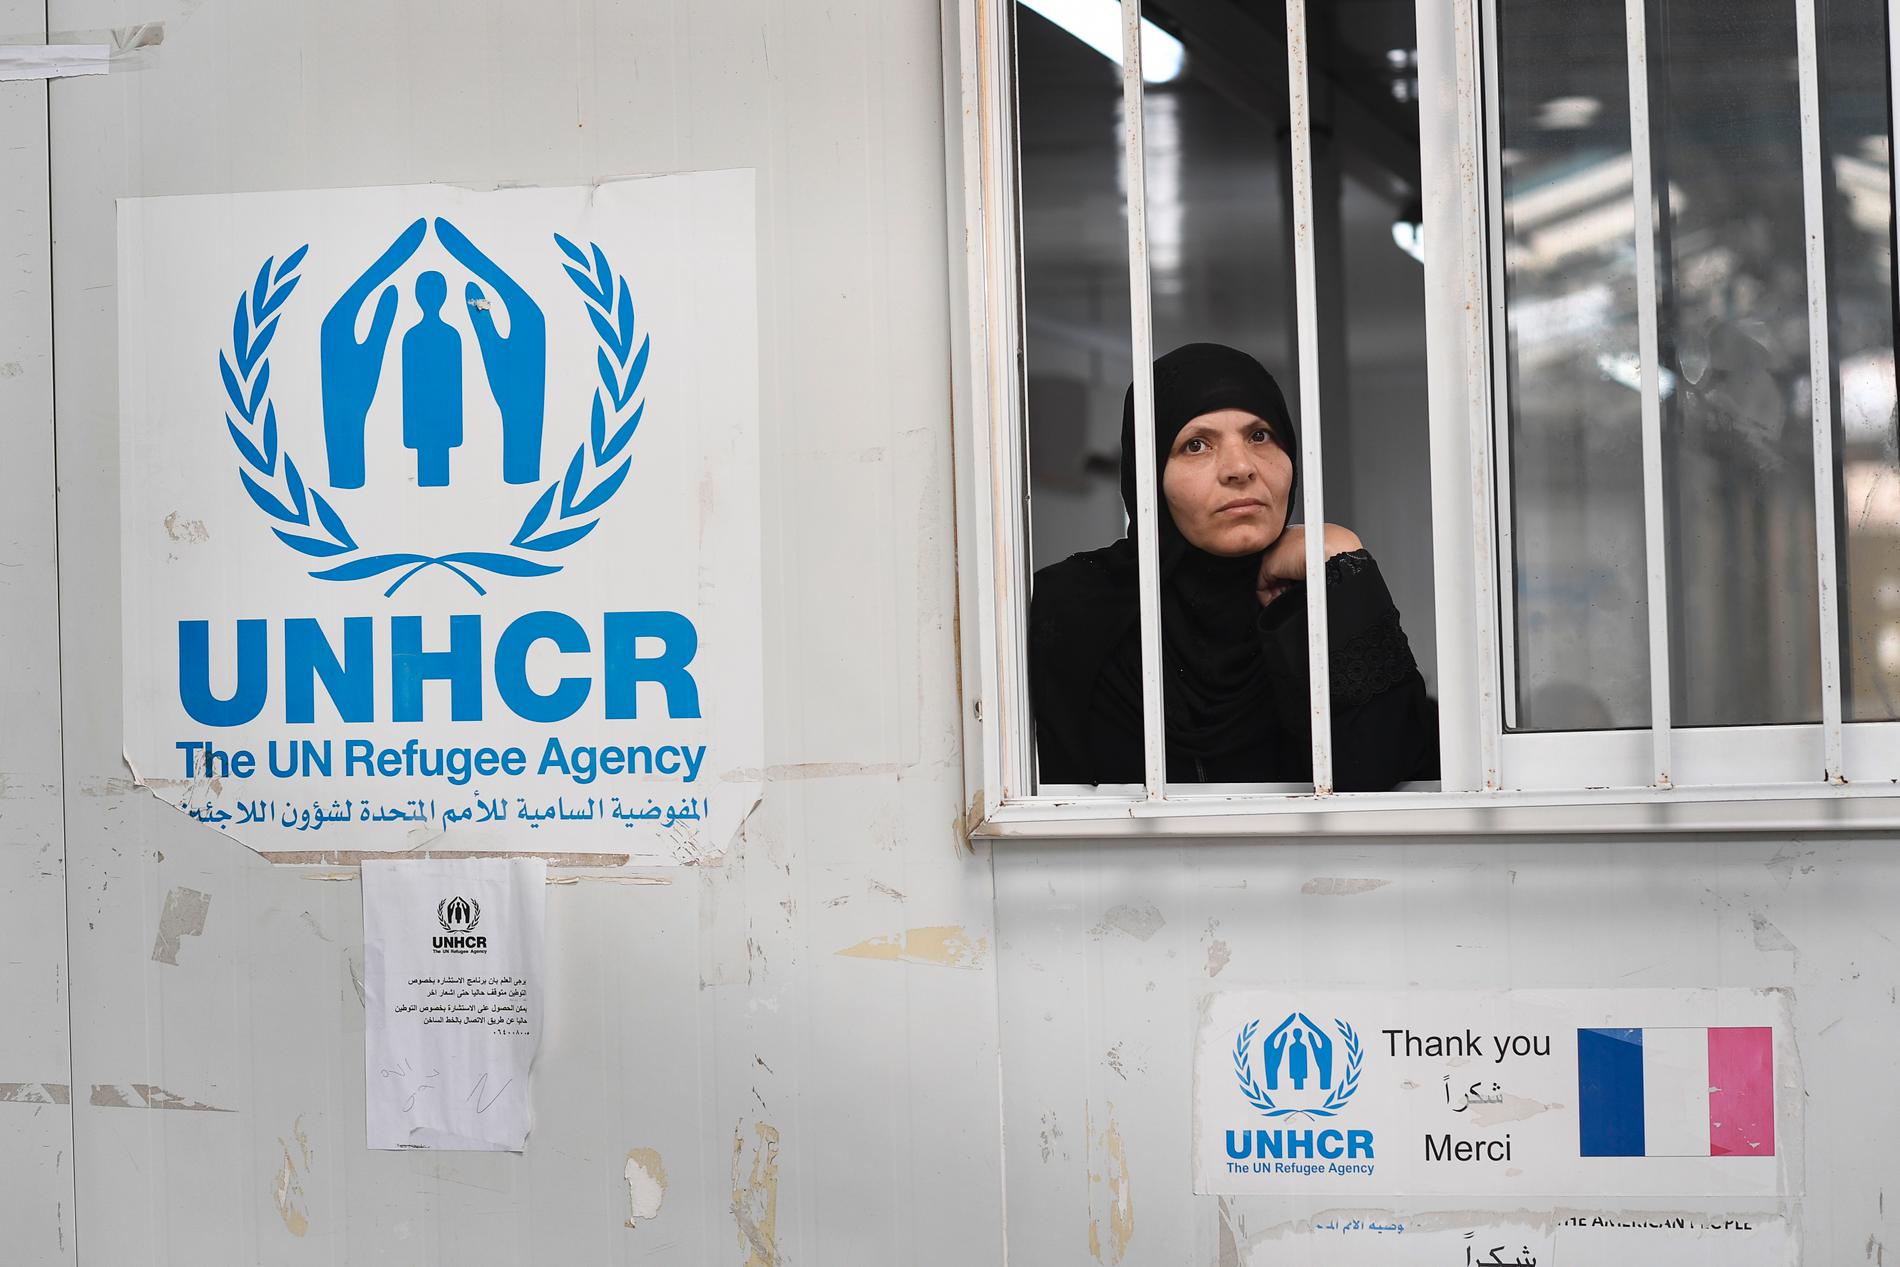 På UNHCR:s mottagningscentrum i Amman avgörs vem som ska bli kvotflykting och få flytta till tredje land.